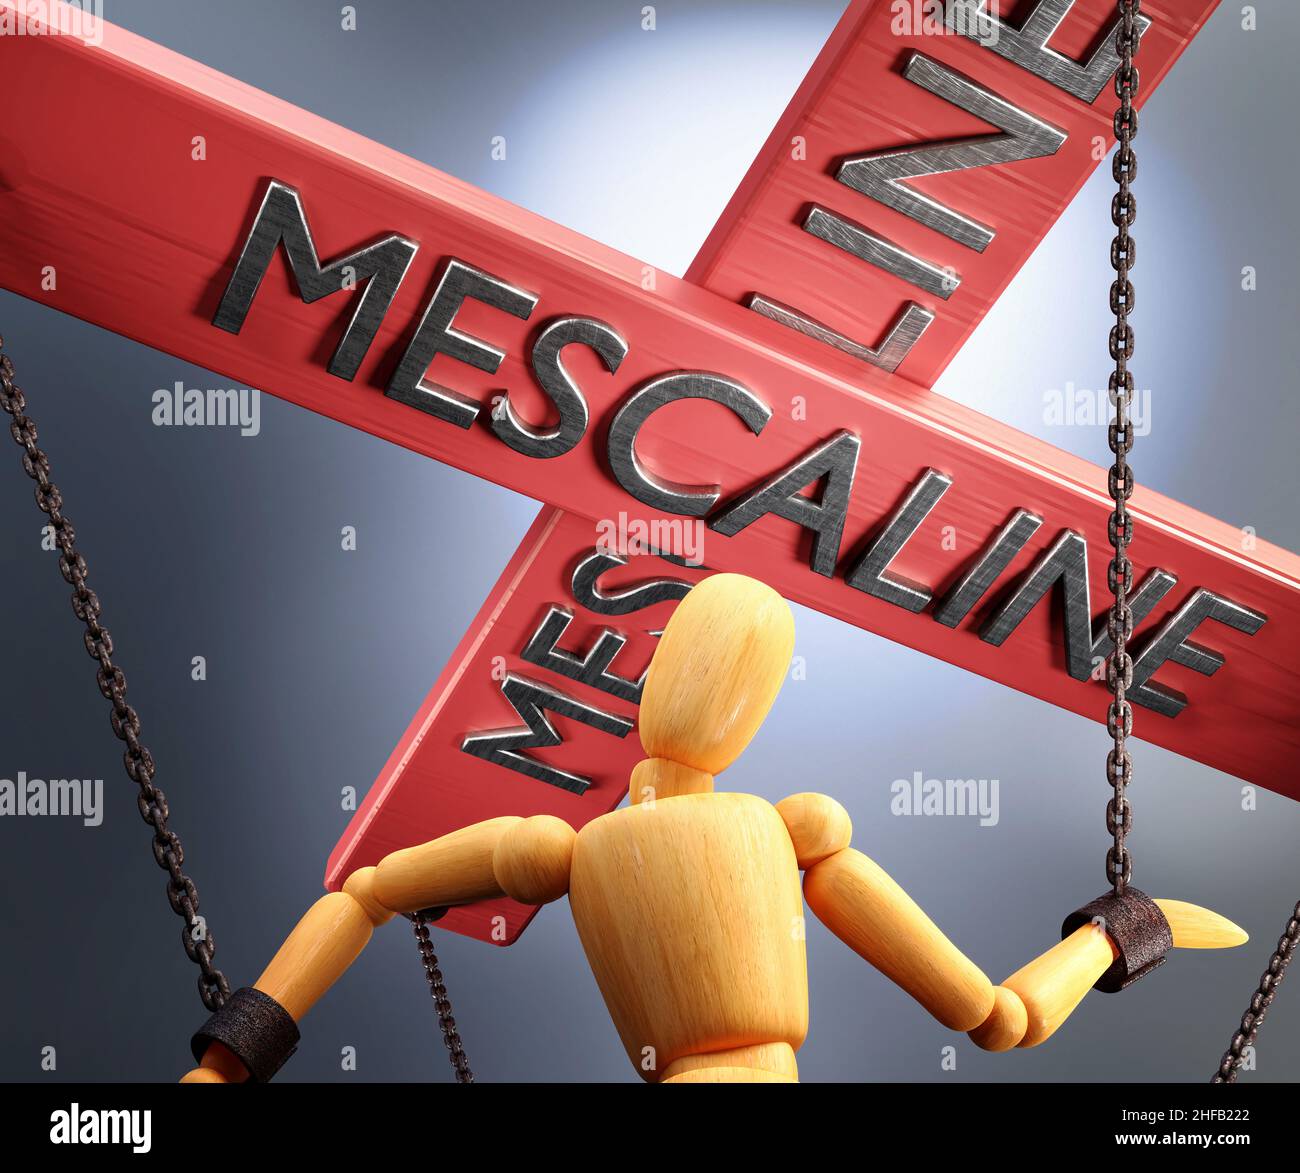 Meskalin-Kontrolle, Macht, Einfluss und Manipulation symbolisiert durch Steuerleiste mit dem Wort Meskalin, das die Saiten (Ketten) einer Holzpuppe zieht, 3D Stockfoto